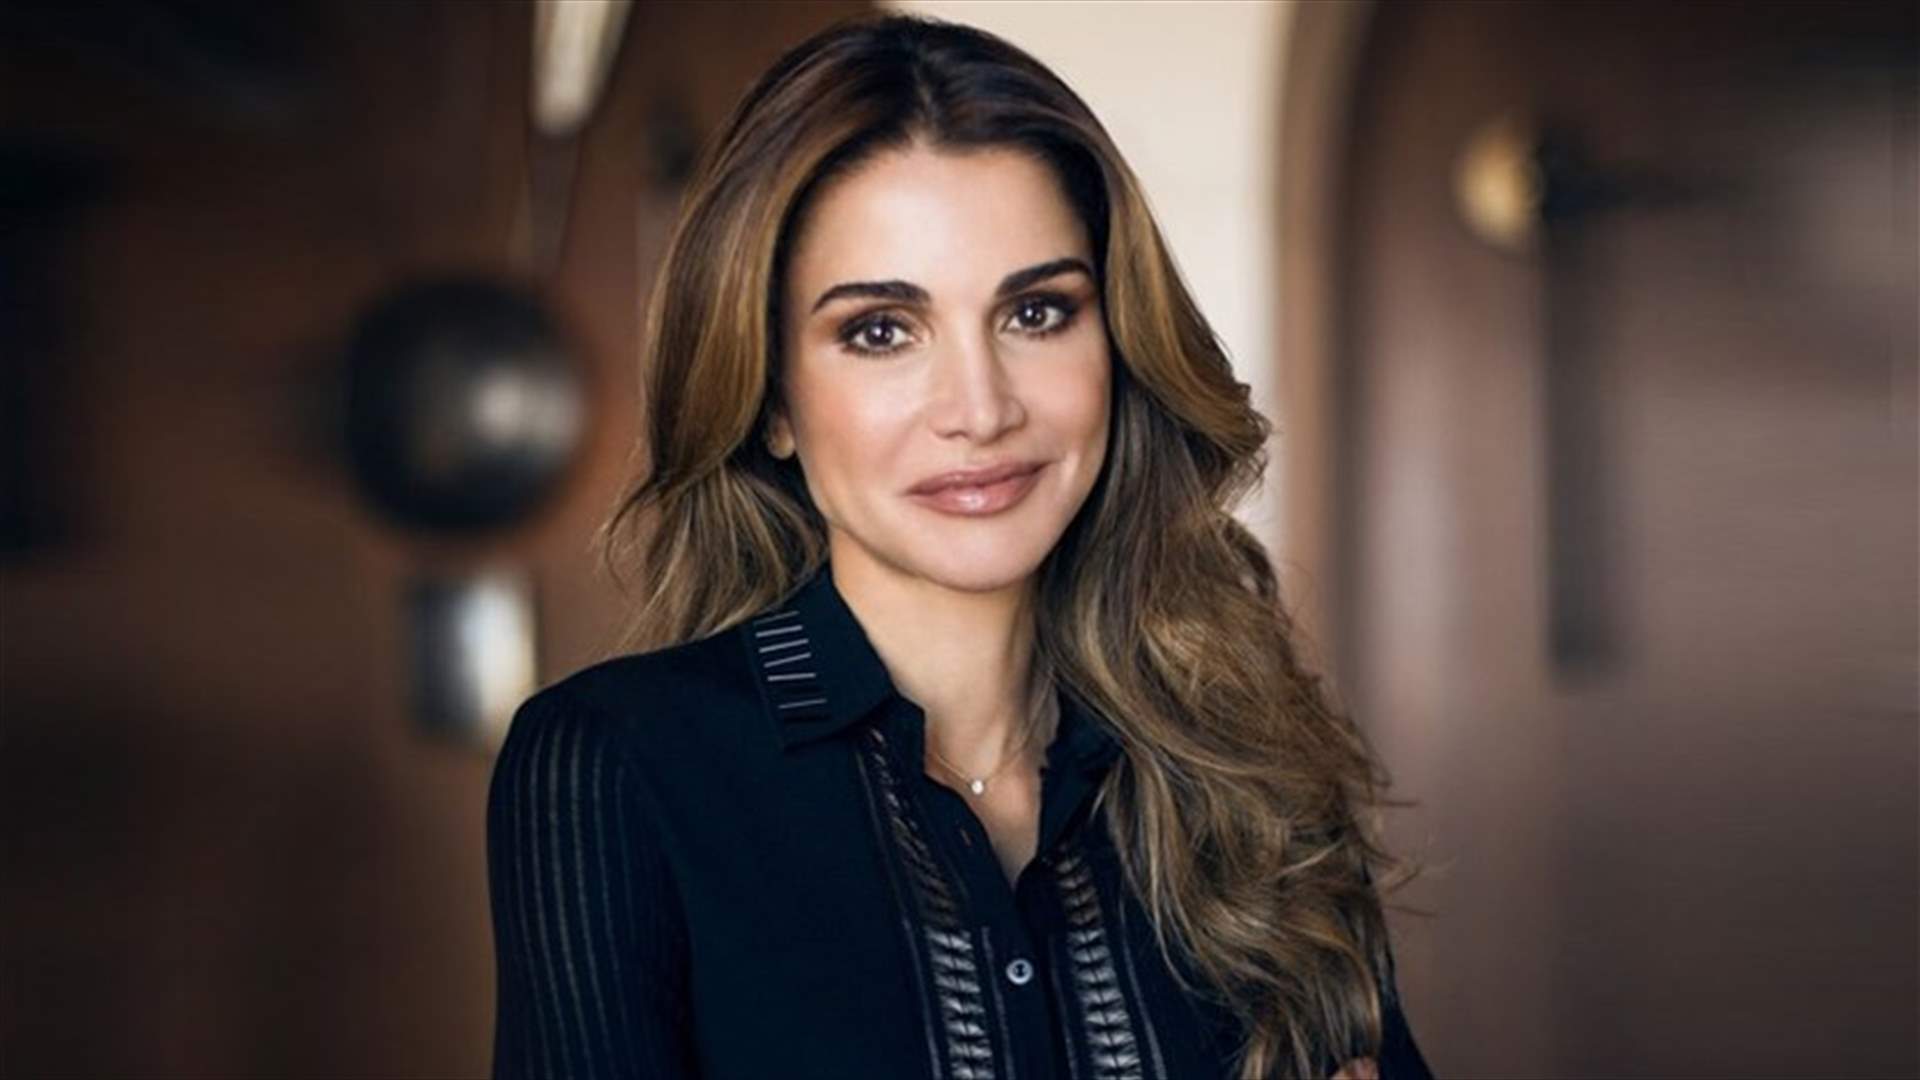 الملكة رانيا في إطلالة تضجّ أنوثة من توقيع مصمم لبناني (صور)